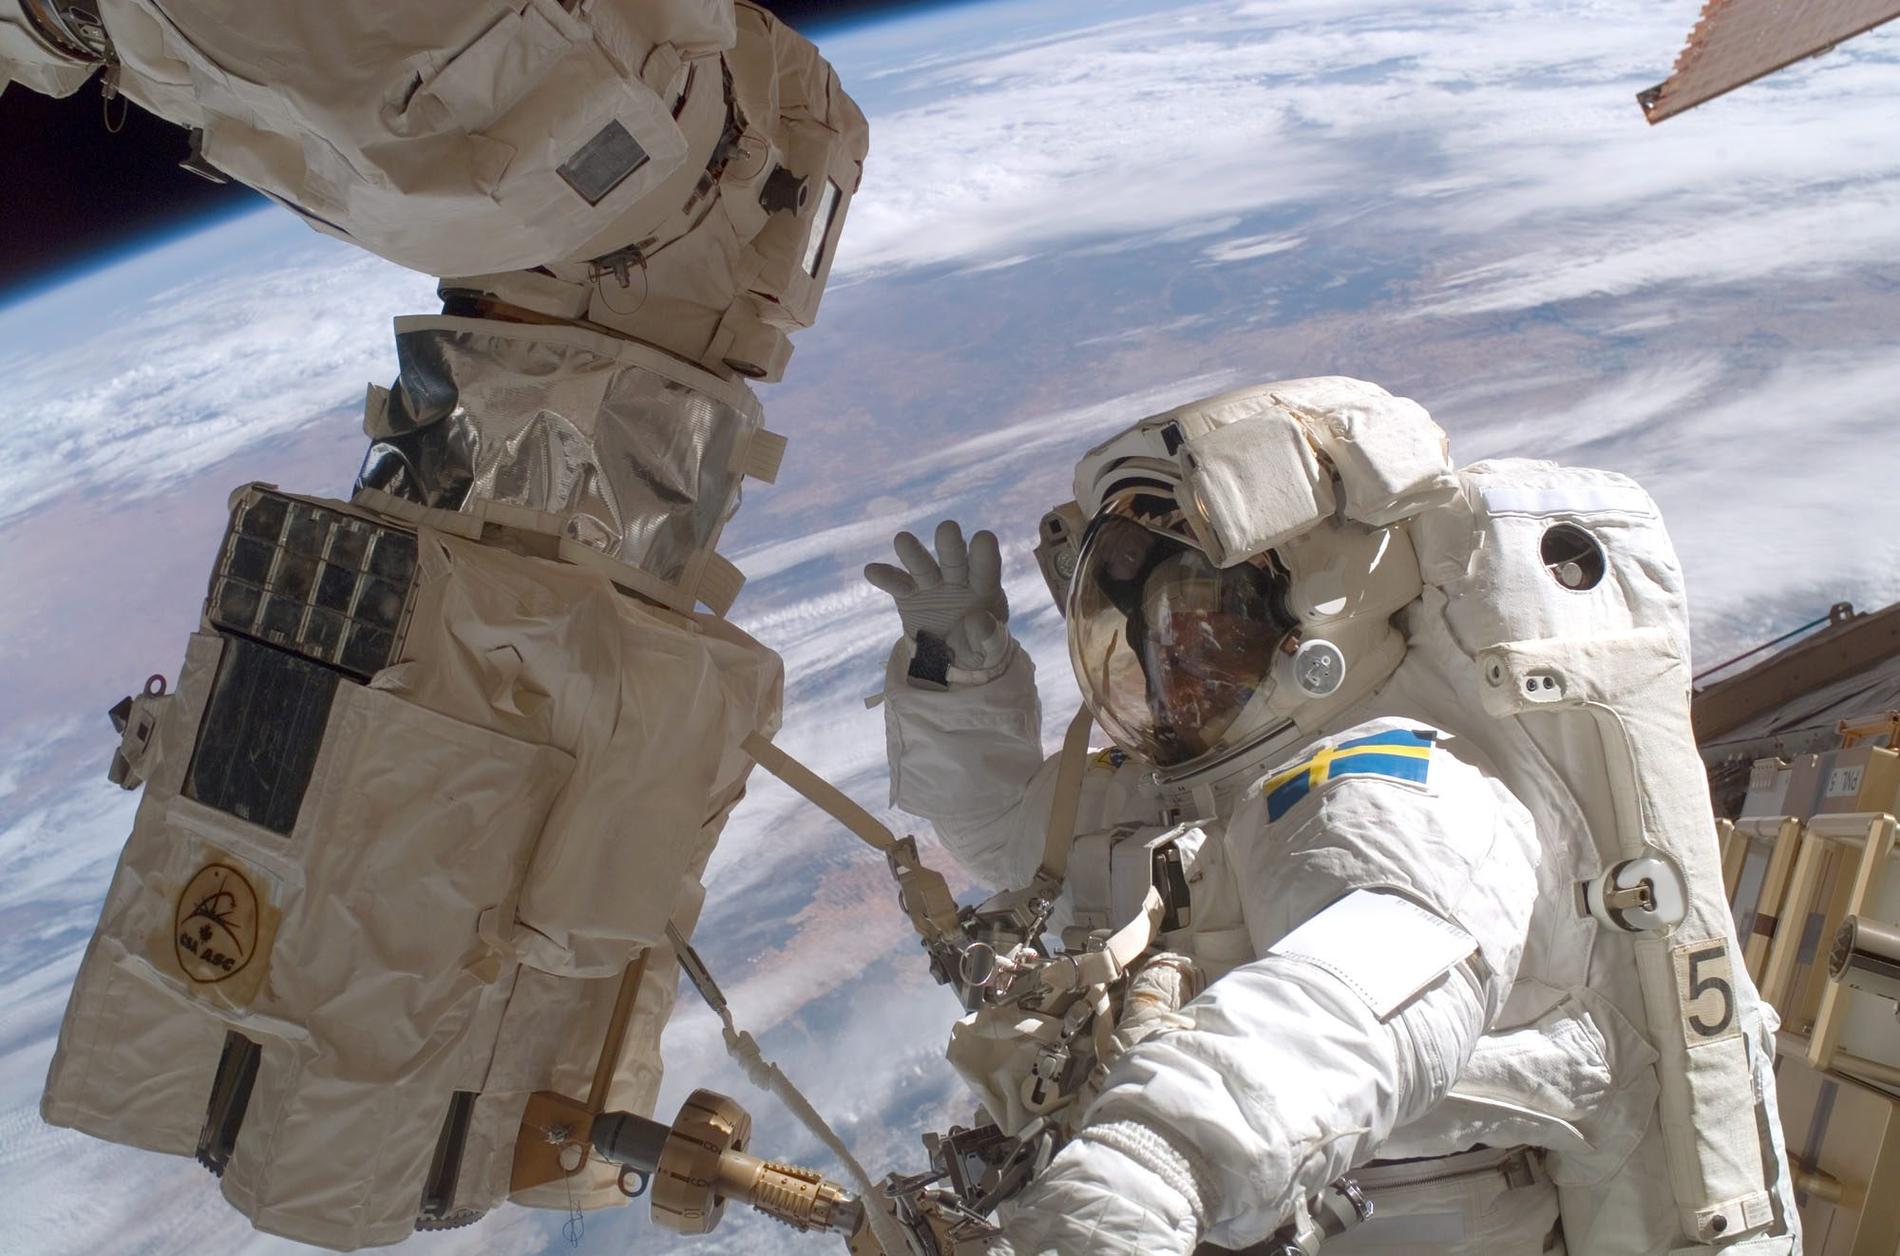 Nasa har spenderat över 200 miljoner dollar på att ta fram nya rymddräkter, men hittills har resultatet varit klent. Bilden: Christer Fuglesang vid rymdstationen ISS 2006.